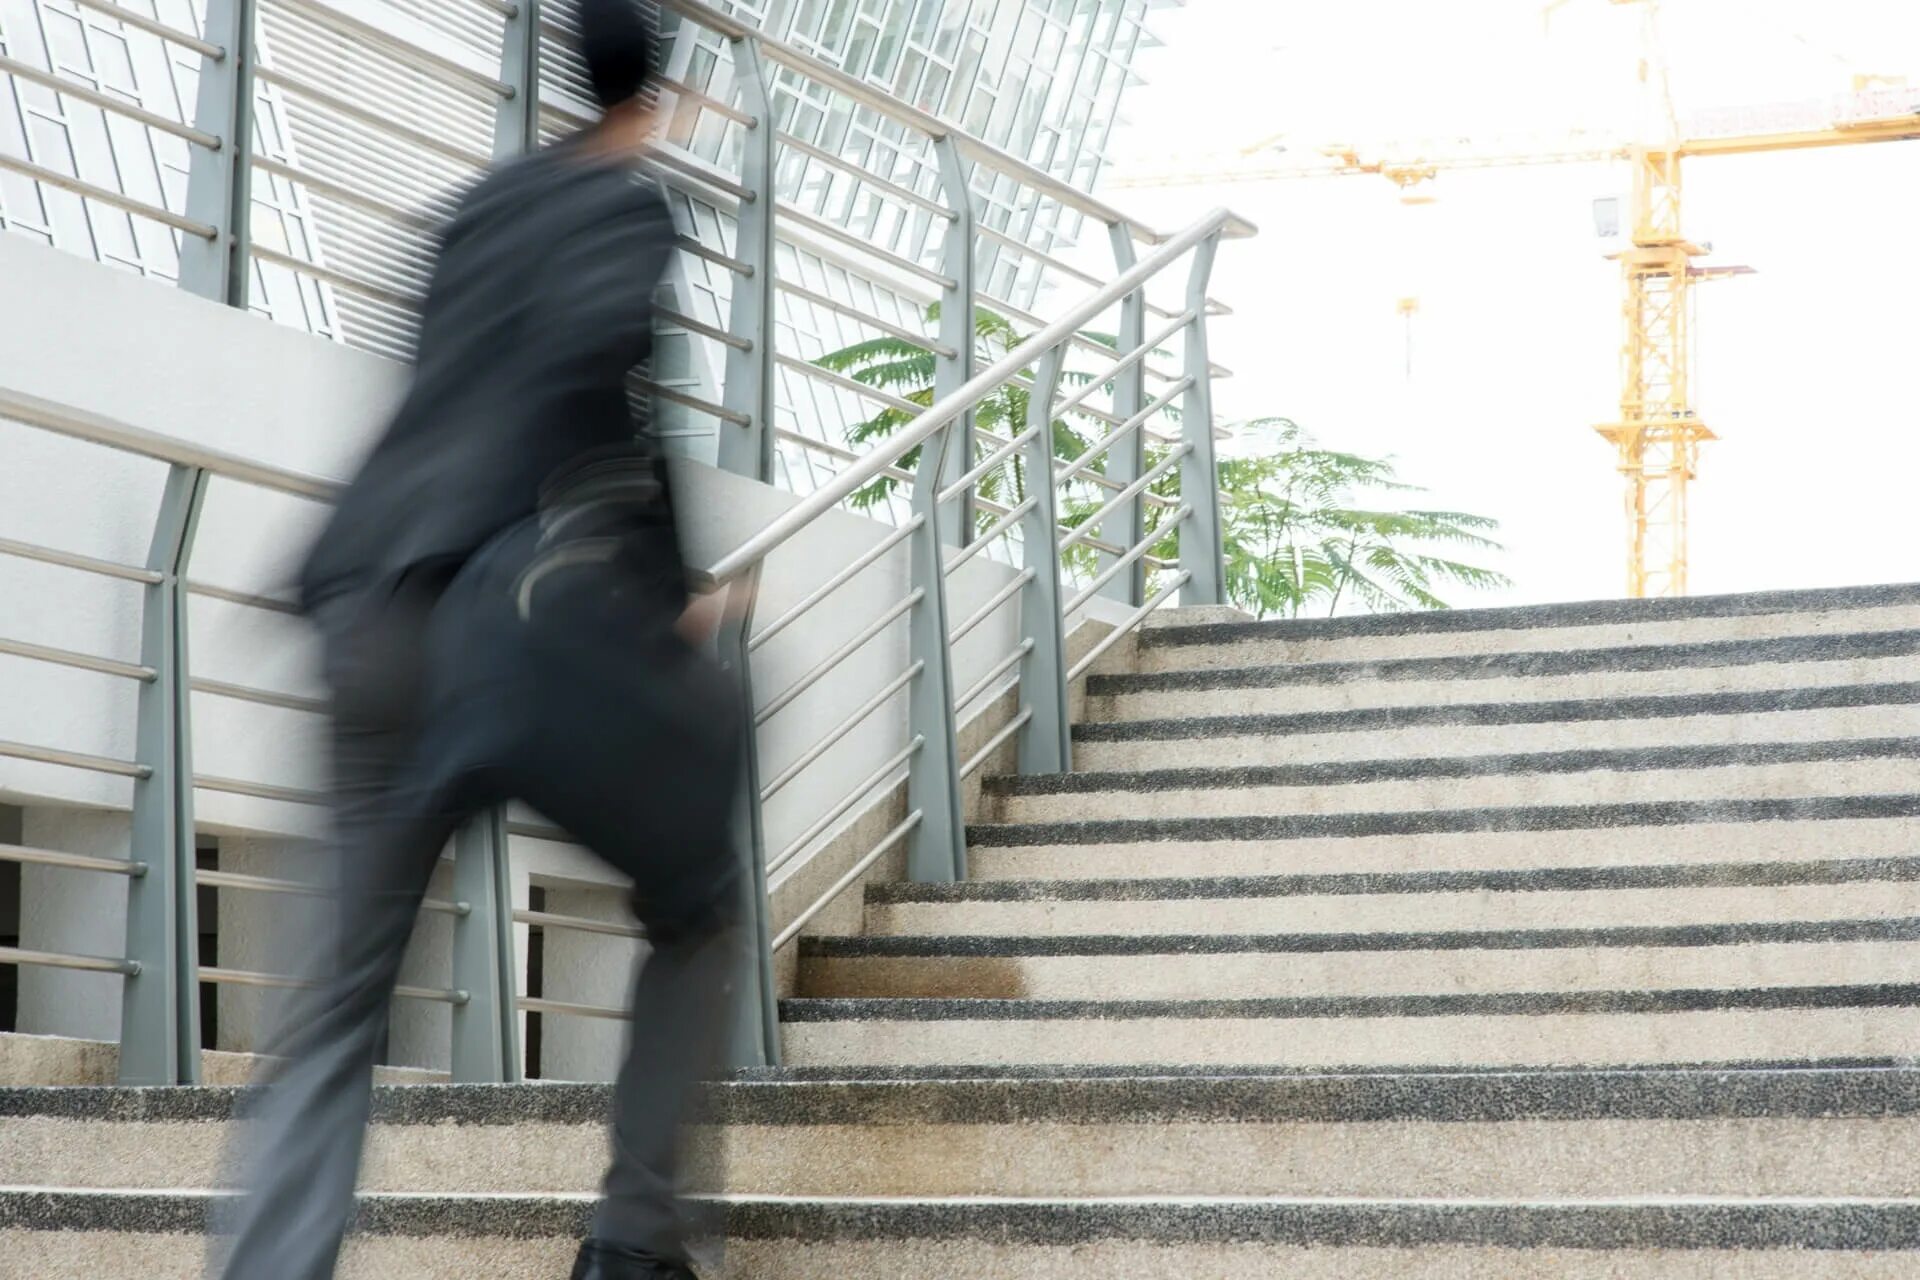 Martin was in a hurry as he. Человек в спешке выбегает из здания. Человек Motion Blur. Офисный сотрудник поднимается по лестнице. Полезно ли подниматься по лестнице.